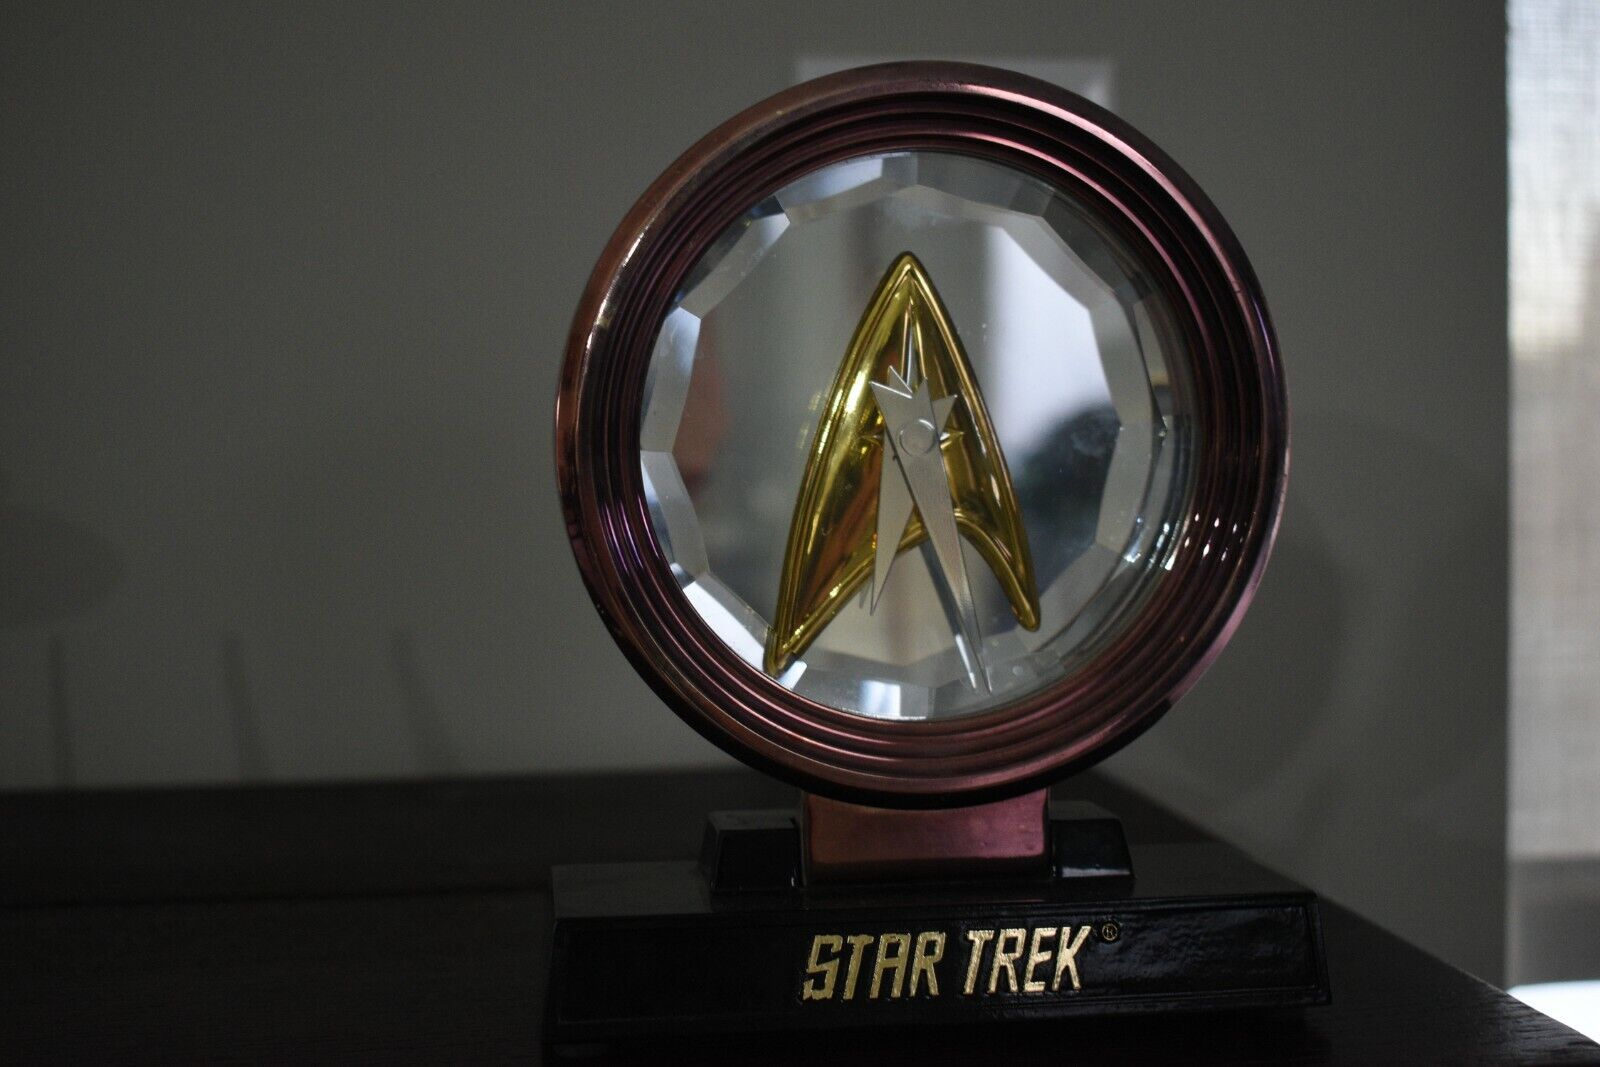 1993 Franklin Mint Star Trek Insignia Clock Limited Release